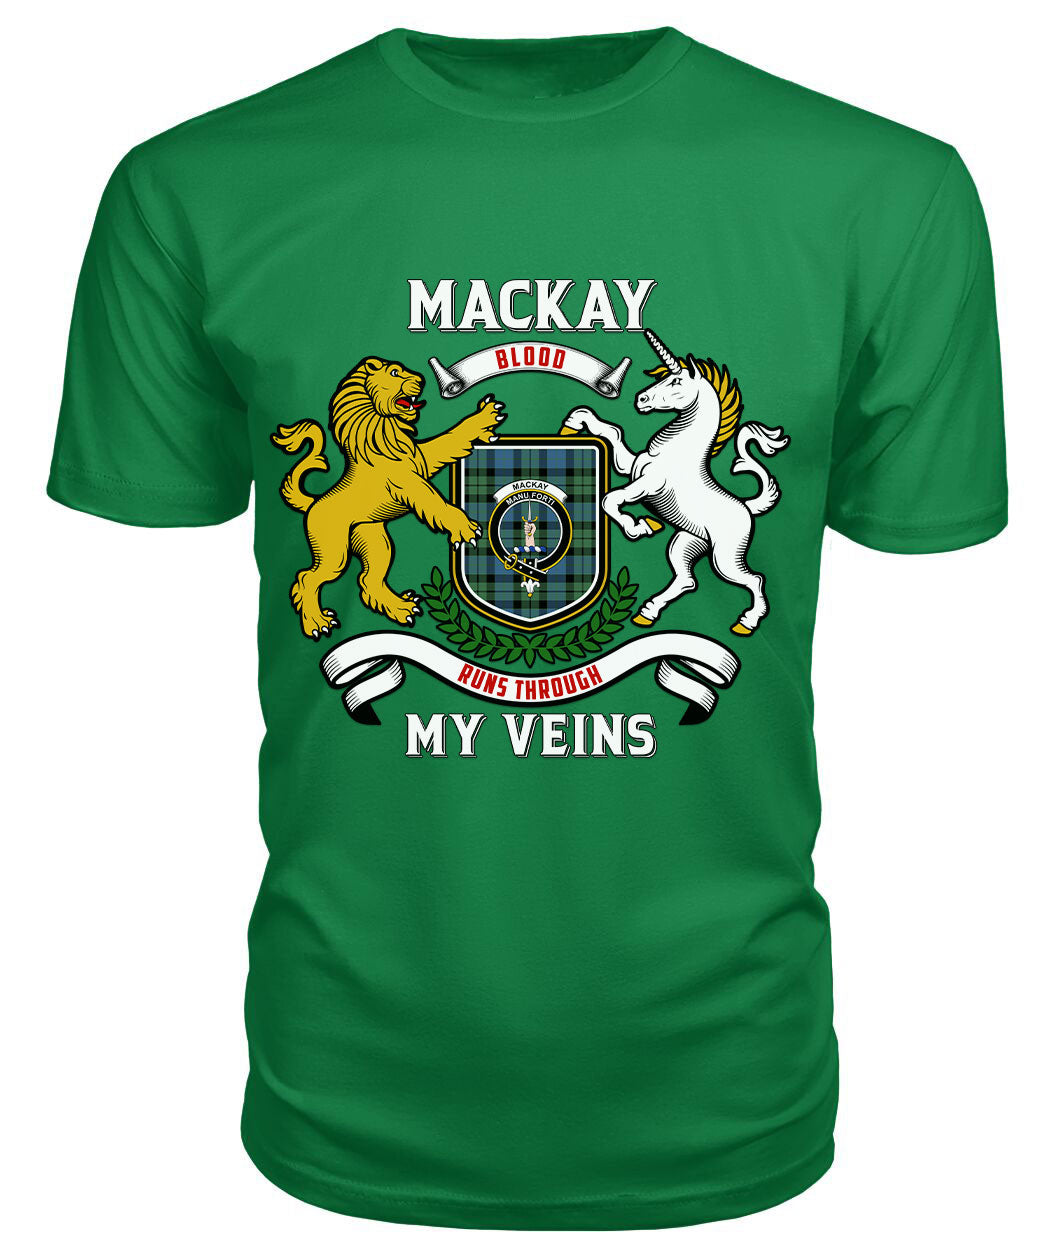 MacKay Ancient Tartan Crest 2D T-shirt - Blood Runs Through My Veins Style